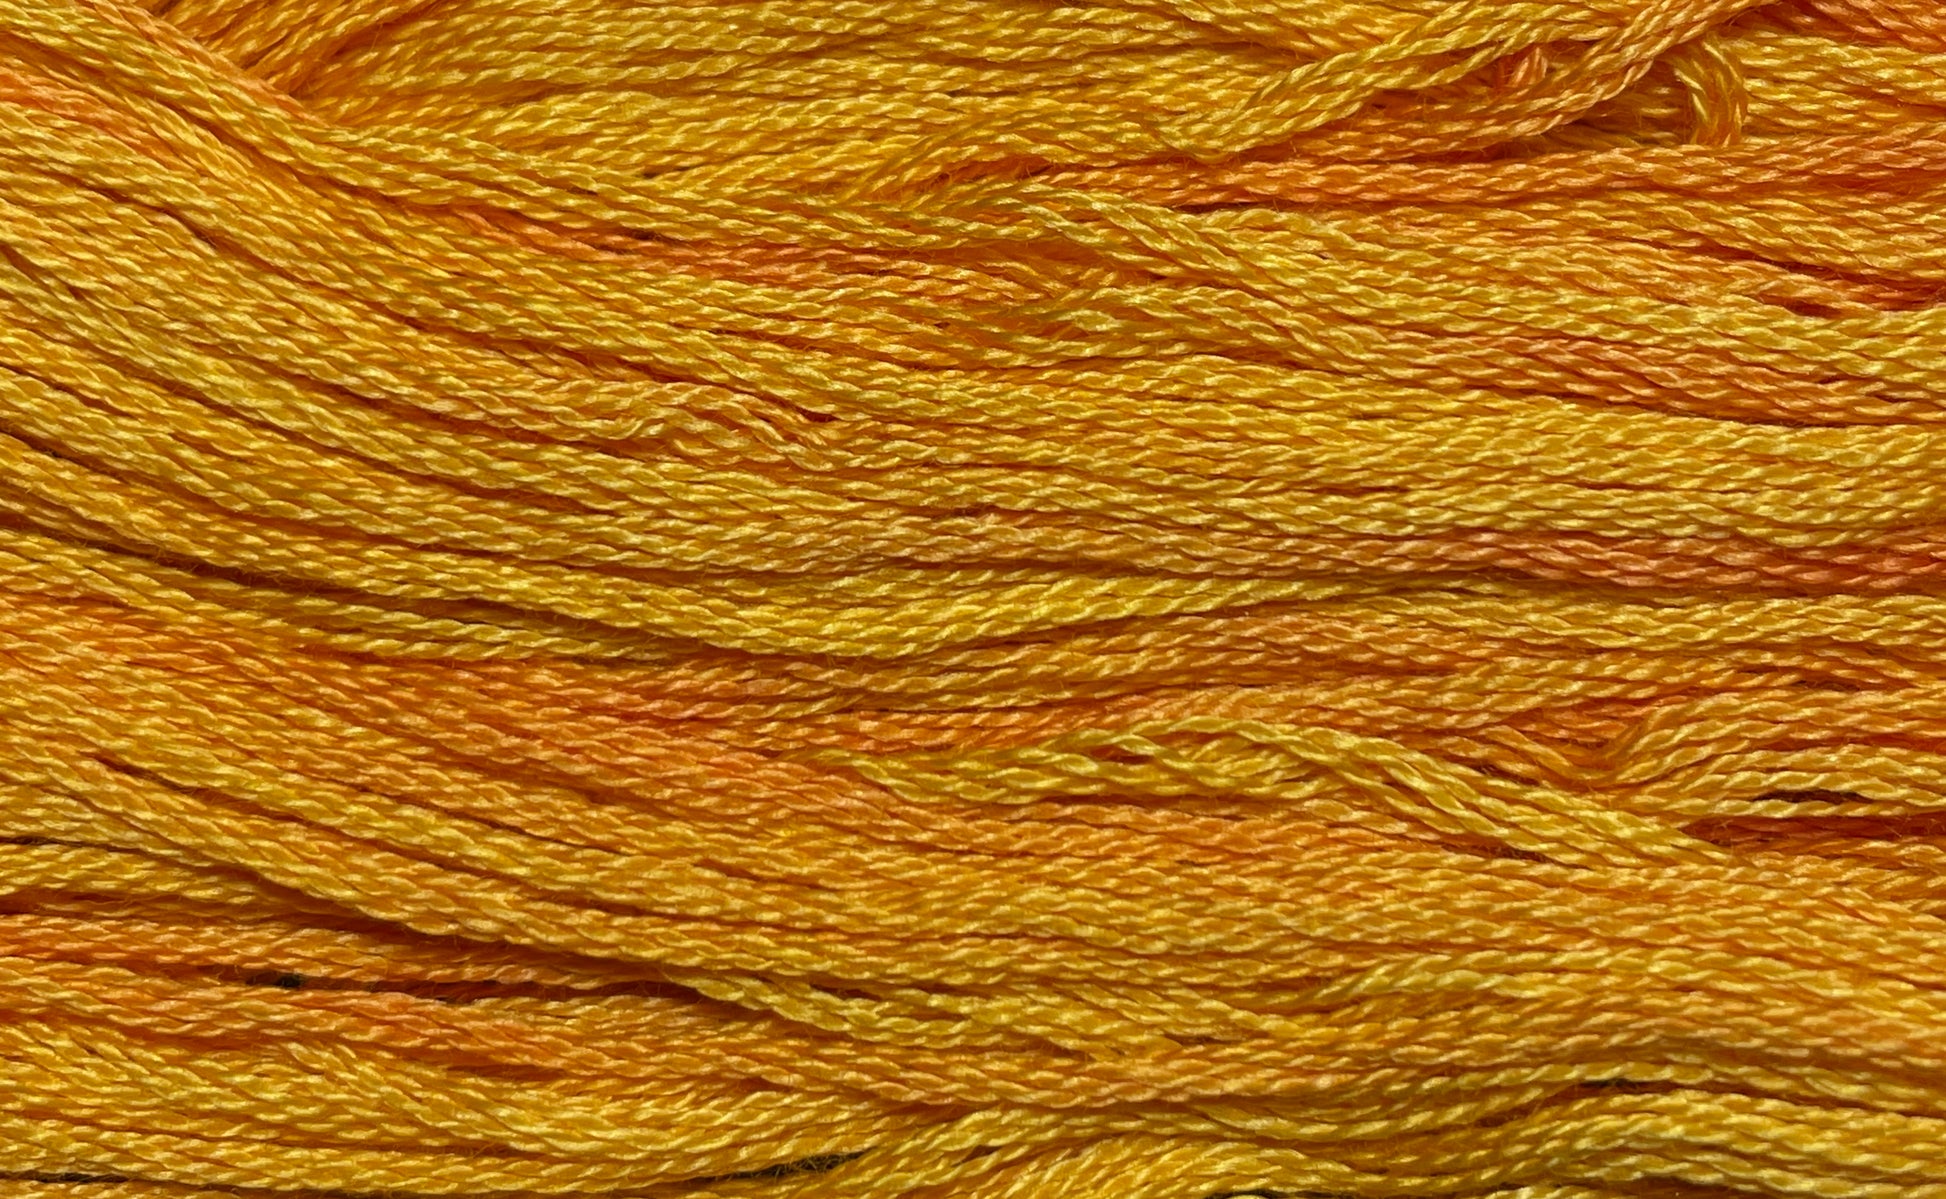 Orange Marmalade - Gentle Arts Cotton Thread - 5 yard Skein - Cross Stitch Floss, Thread & Floss, Thread & Floss, The Crafty Grimalkin - A Cross Stitch Store